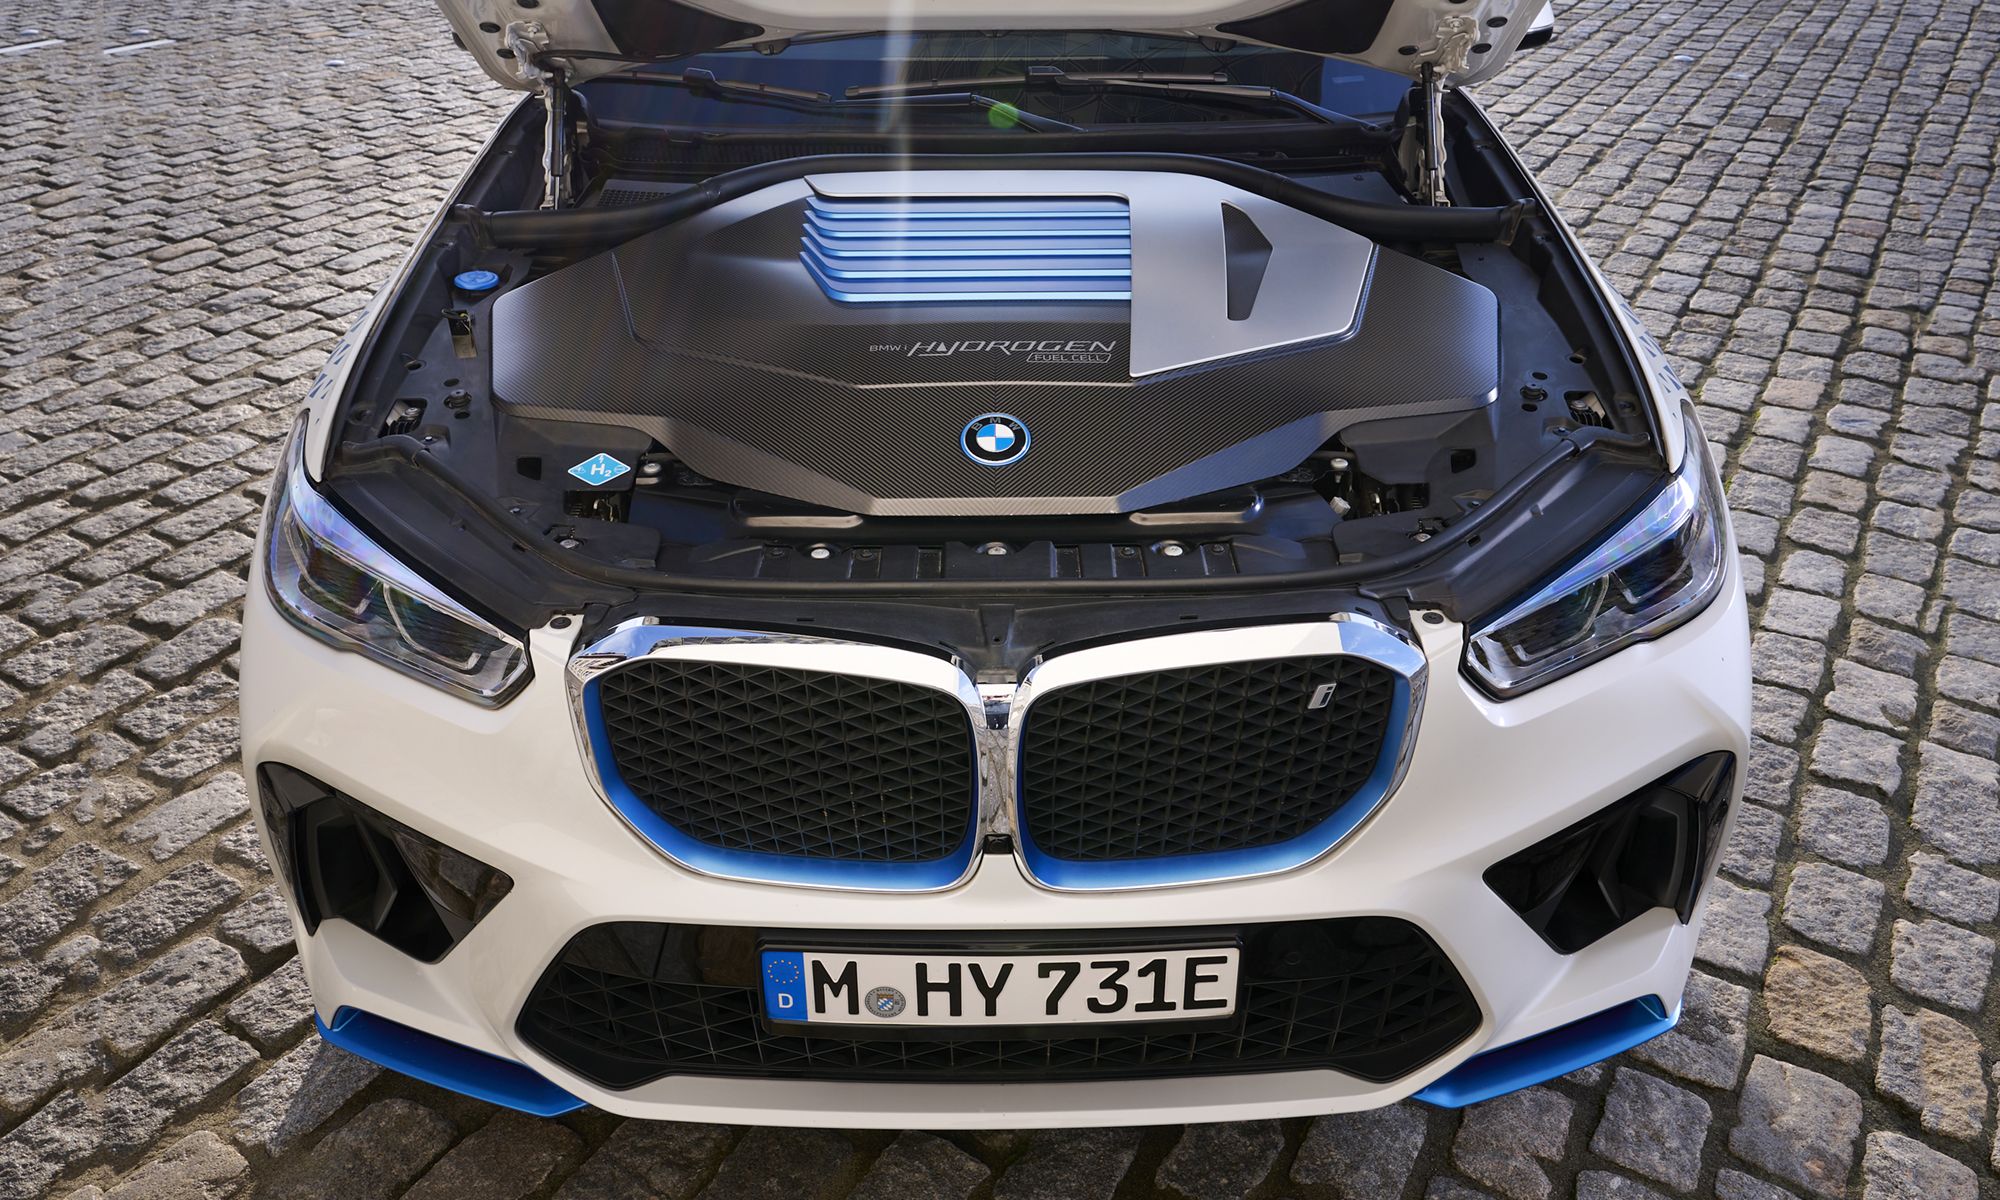 Próximamente, BMW podrá comercializar un vehículo de hidrógeno y uno eléctrico sin que suponga un coste adicional para el cliente.